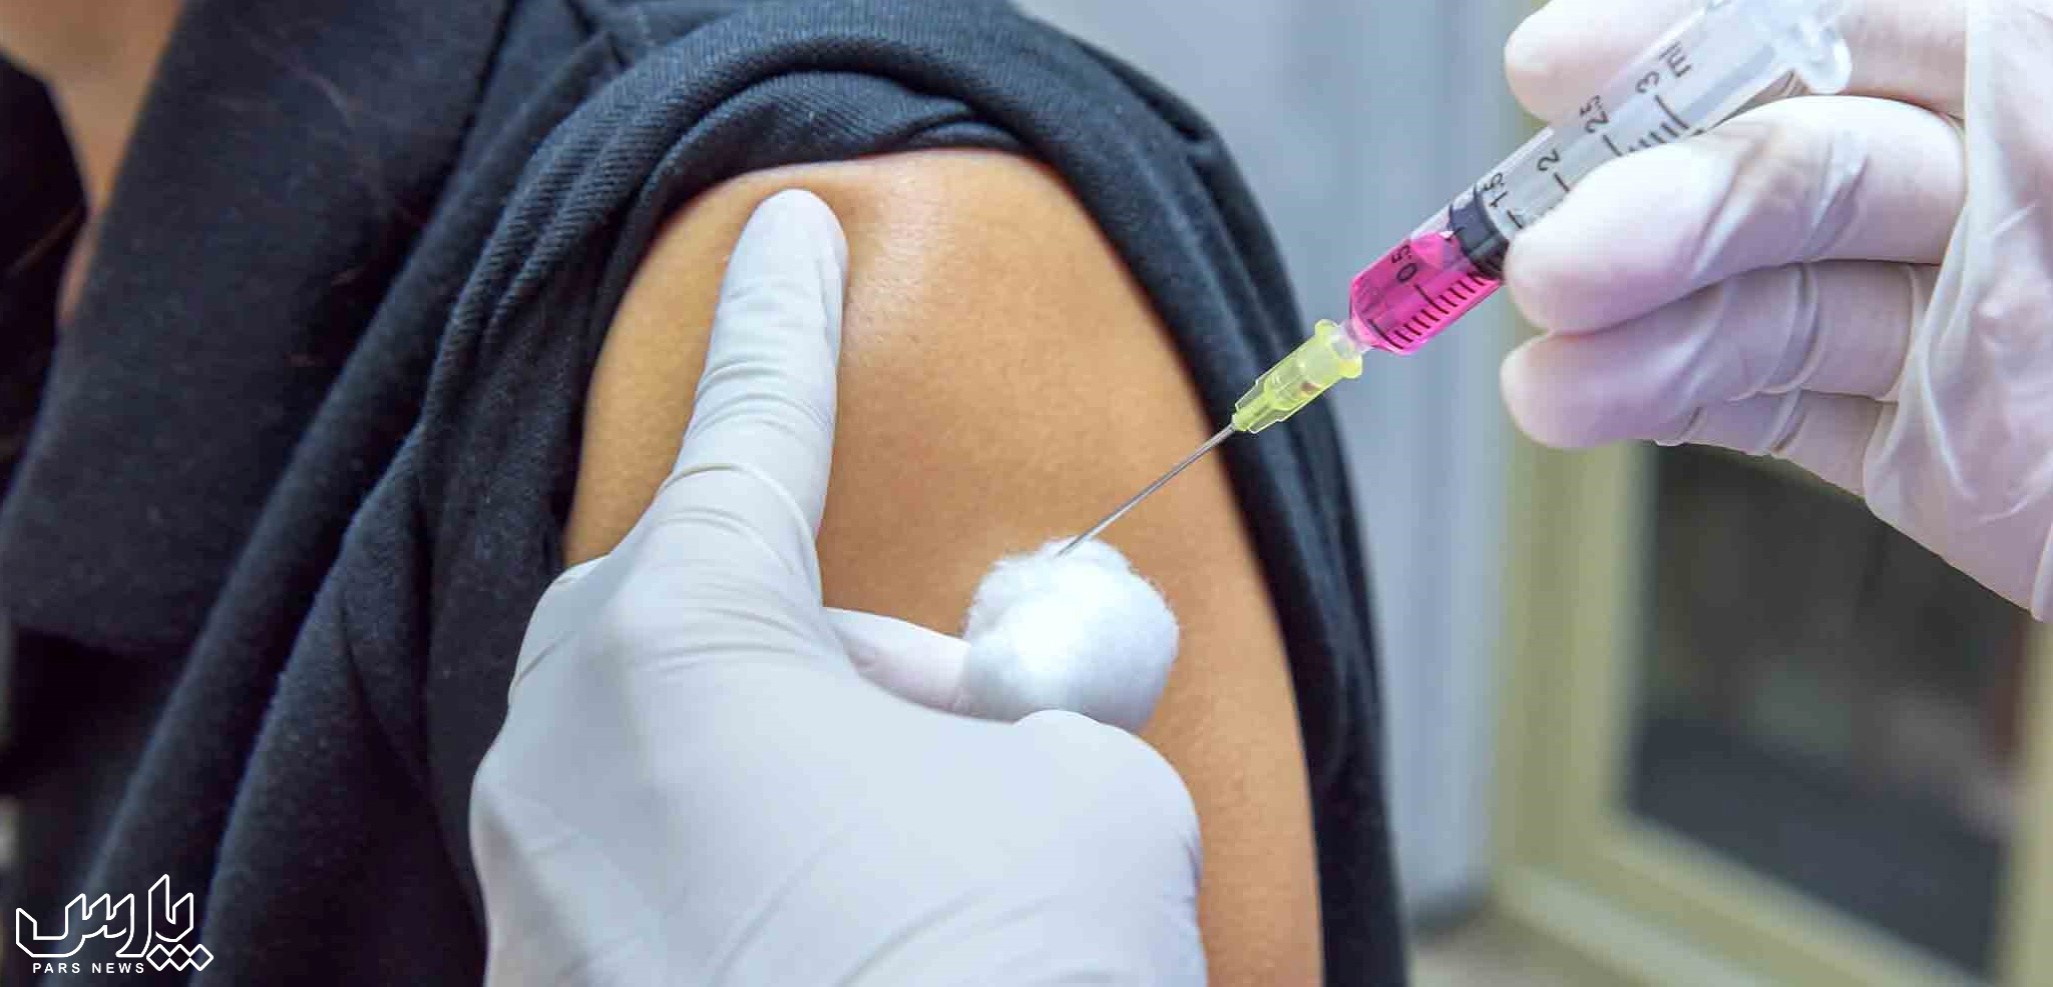 واکسن اچ پی وی - راه های انتقال زگیل تناسلی